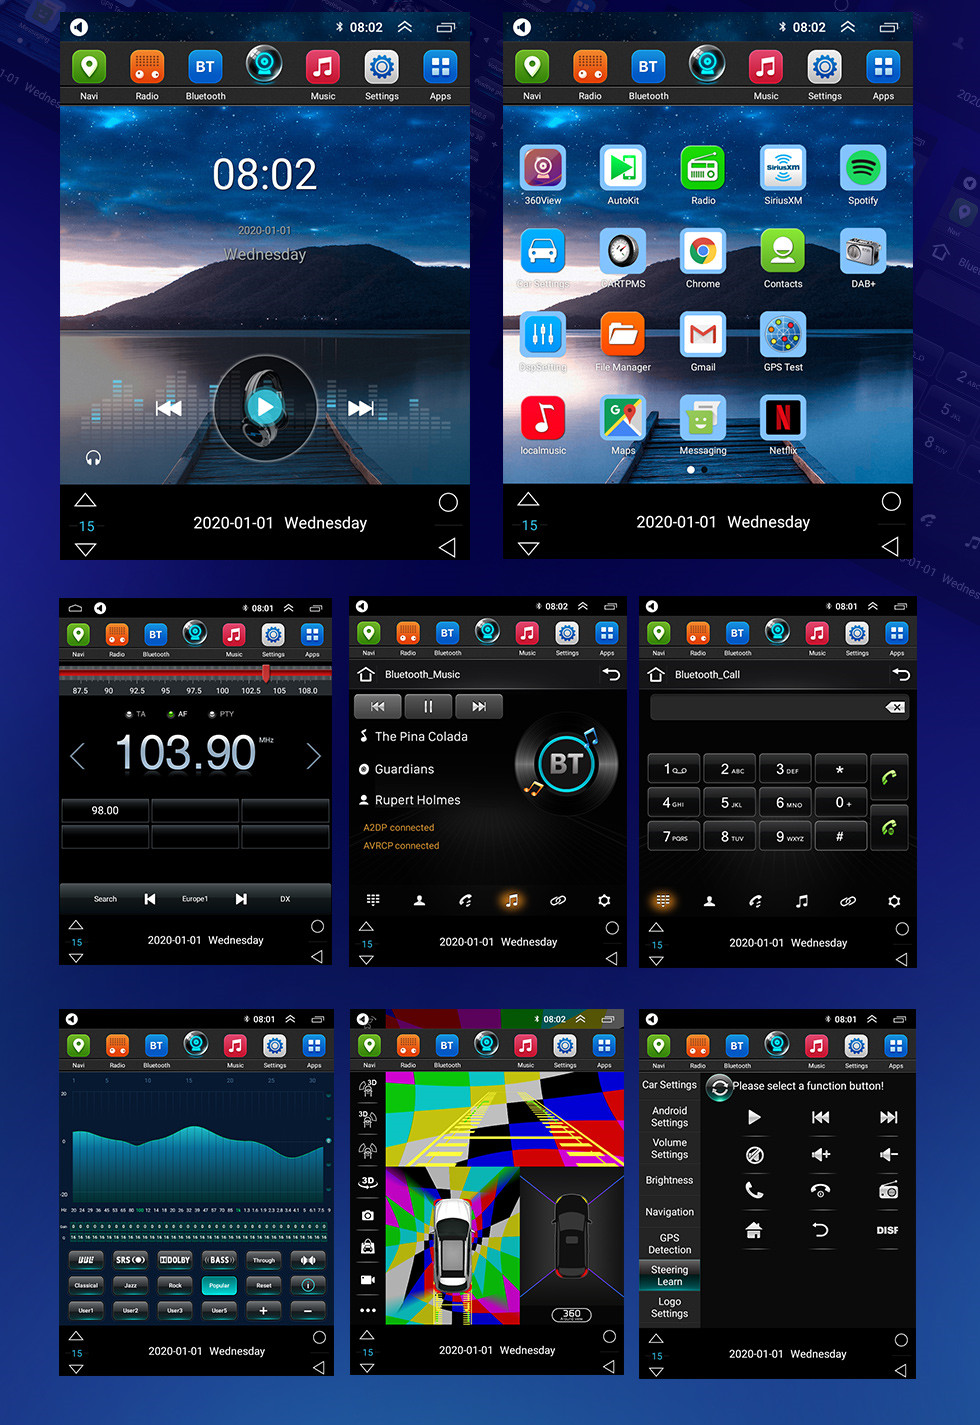 Seicane Сенсорный экран HD для 2015-2018 Toyota Highlander Radio Android 10.0 9,7-дюймовый GPS-навигатор Поддержка Bluetooth Цифровое ТВ Carplay